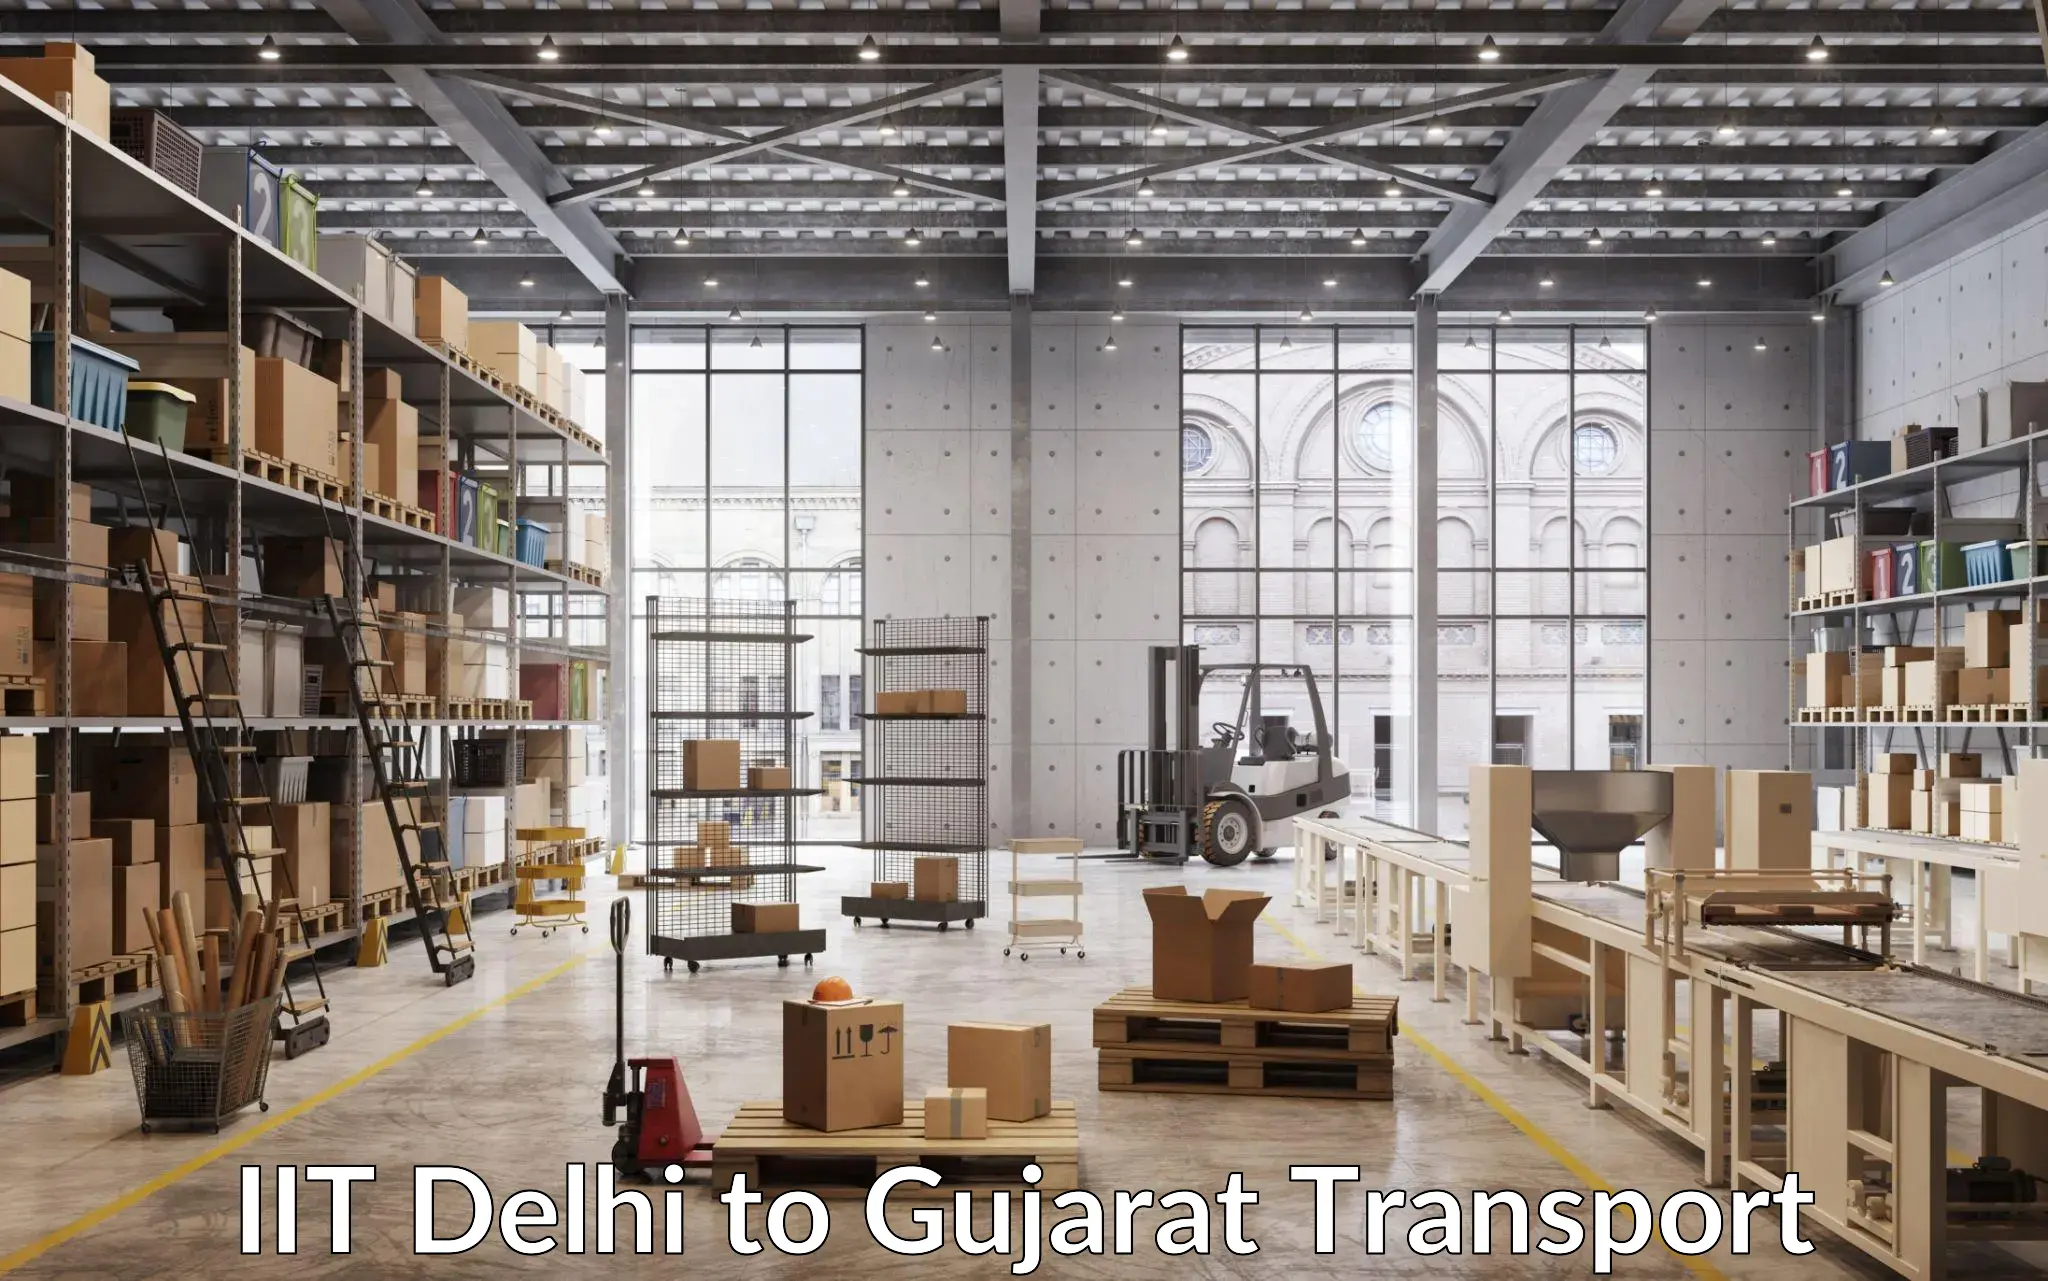 Cargo transport services IIT Delhi to Gandhinagar